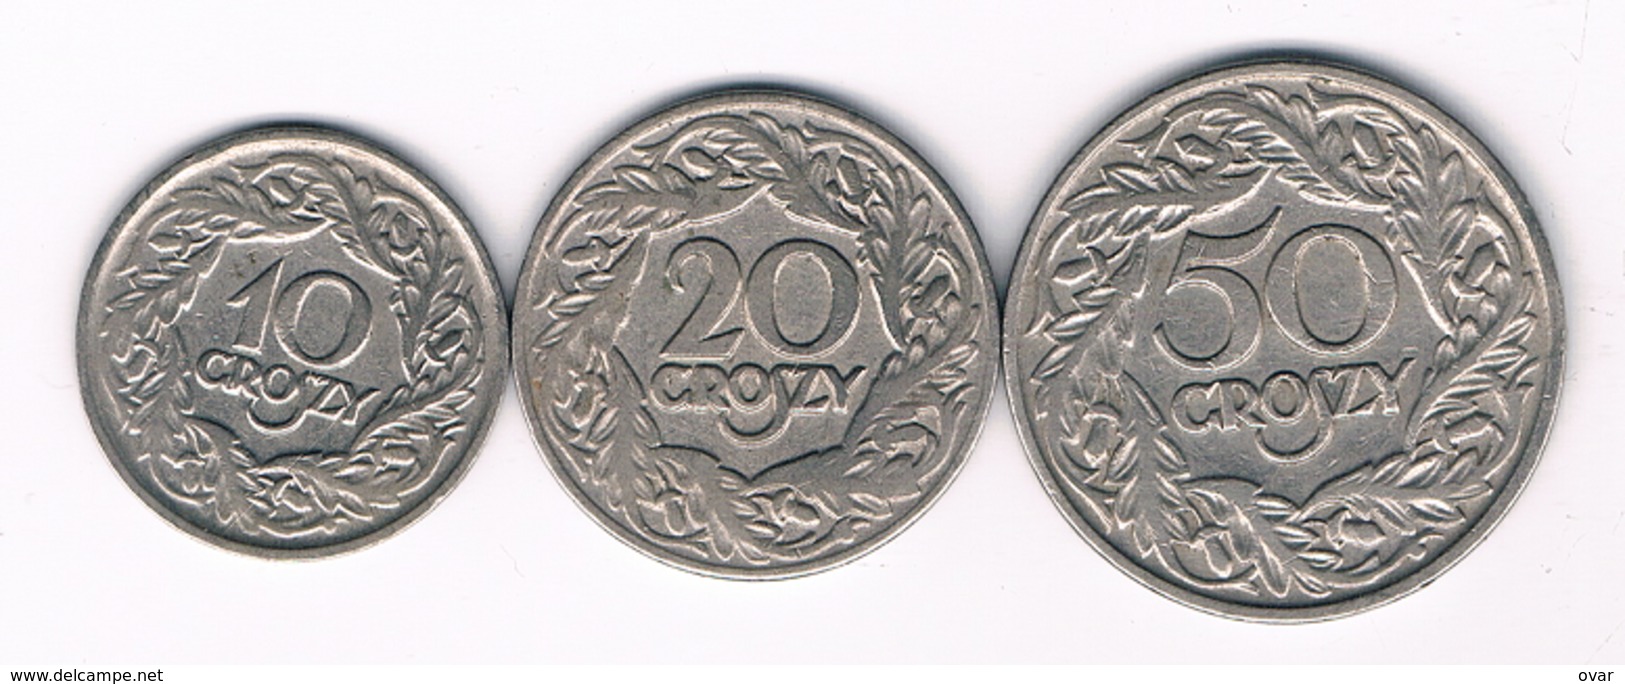 10+20+50 GROSZY 1923 POLEN /3870/ - Poland